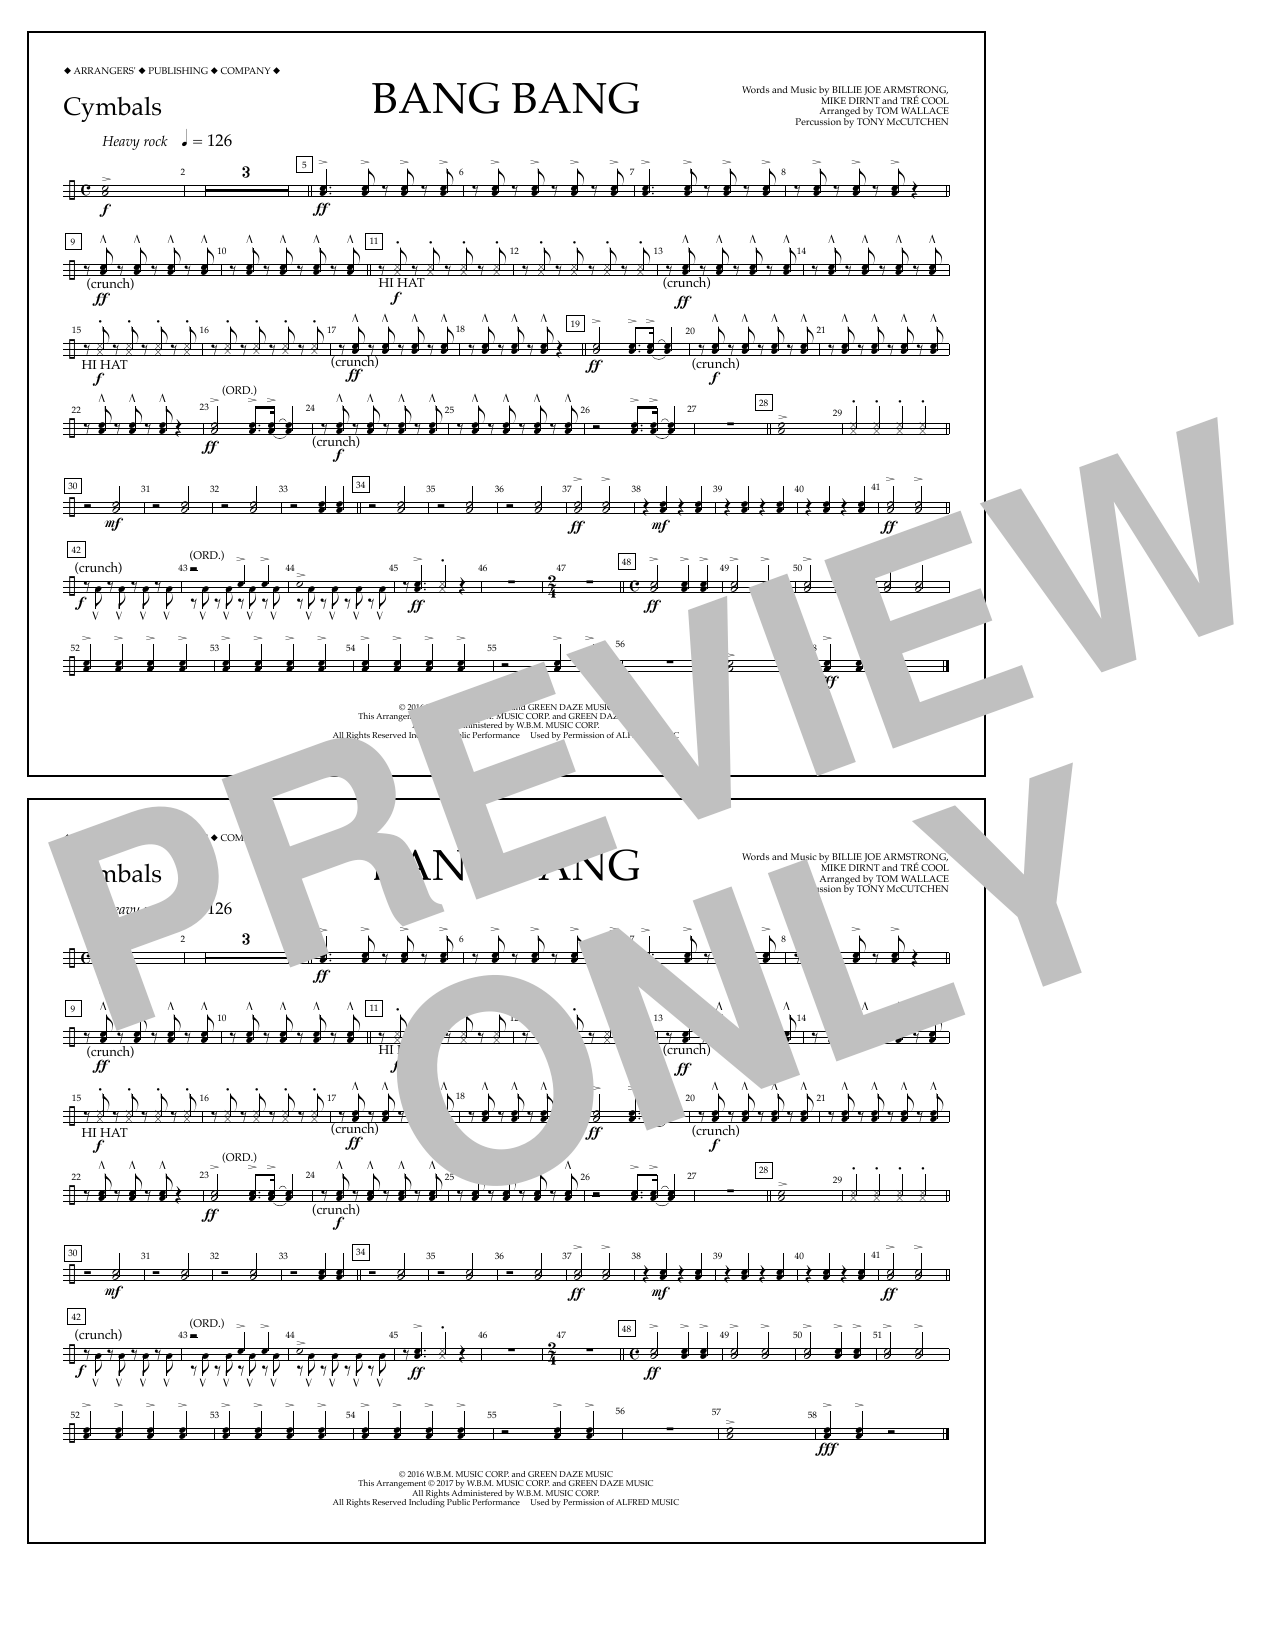 Tom Wallace Bang Bang - Cymbals Sheet Music Notes & Chords for Marching Band - Download or Print PDF